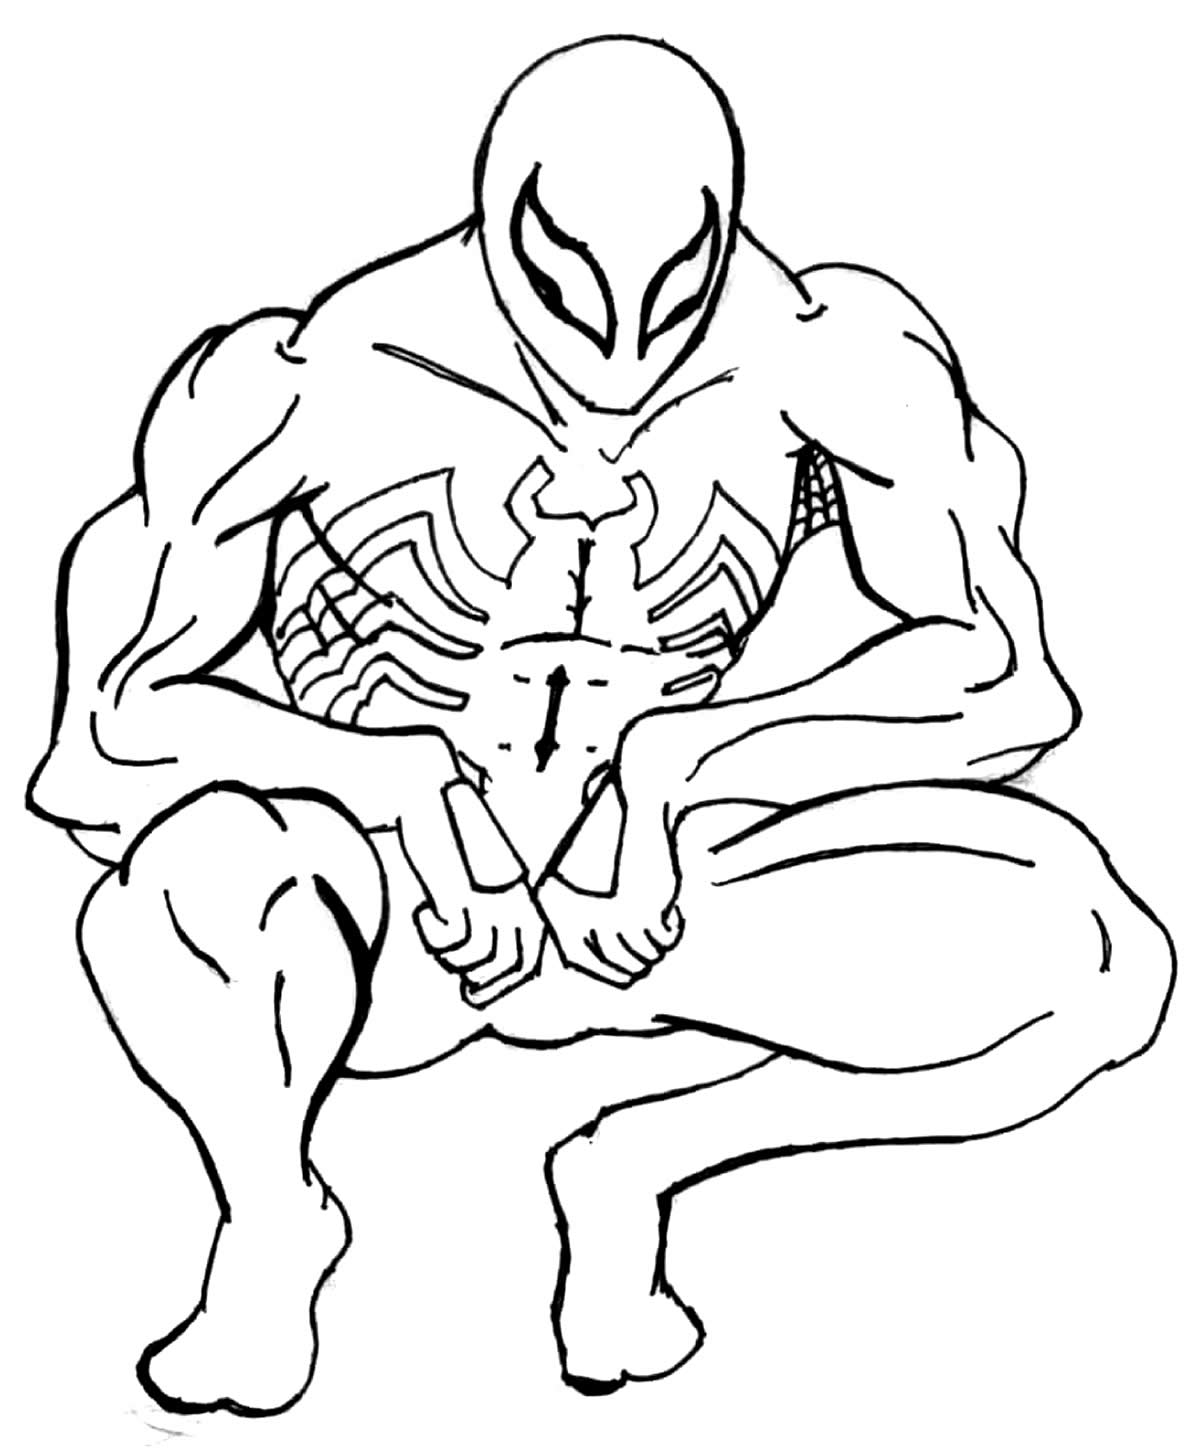 Desenhos para colorir de Homem-Aranha